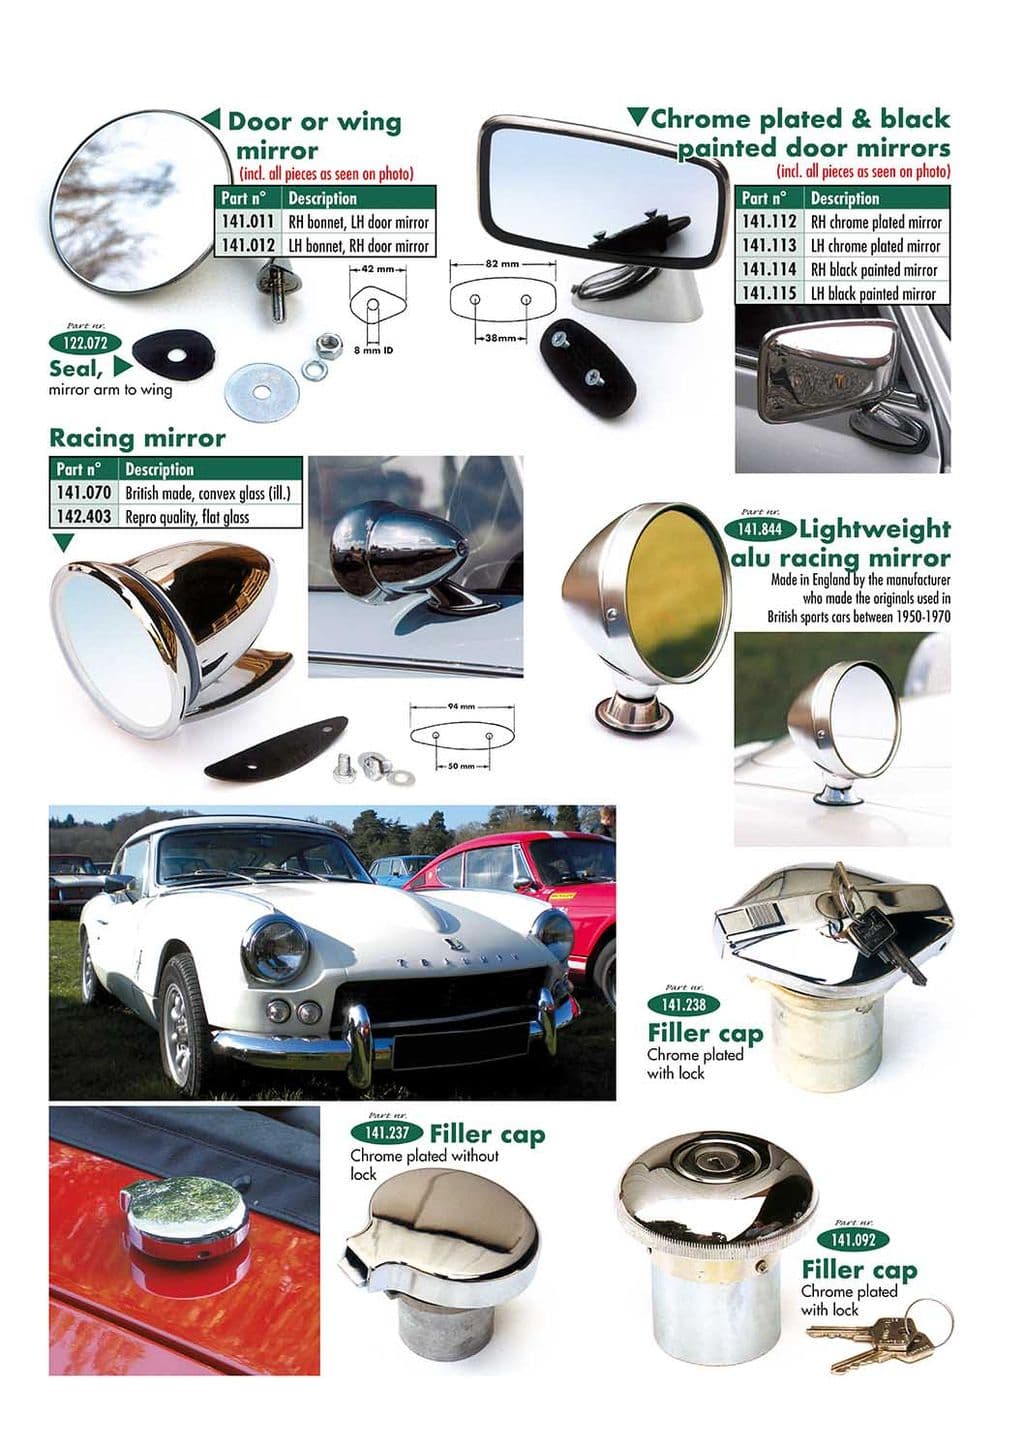 Mirrors & fuel filler caps - Ulkopuolen varustelu & tarvikkeet - Viritys & tarvikkeet - Triumph GT6 MKI-III 1966-1973 - Mirrors & fuel filler caps - 1